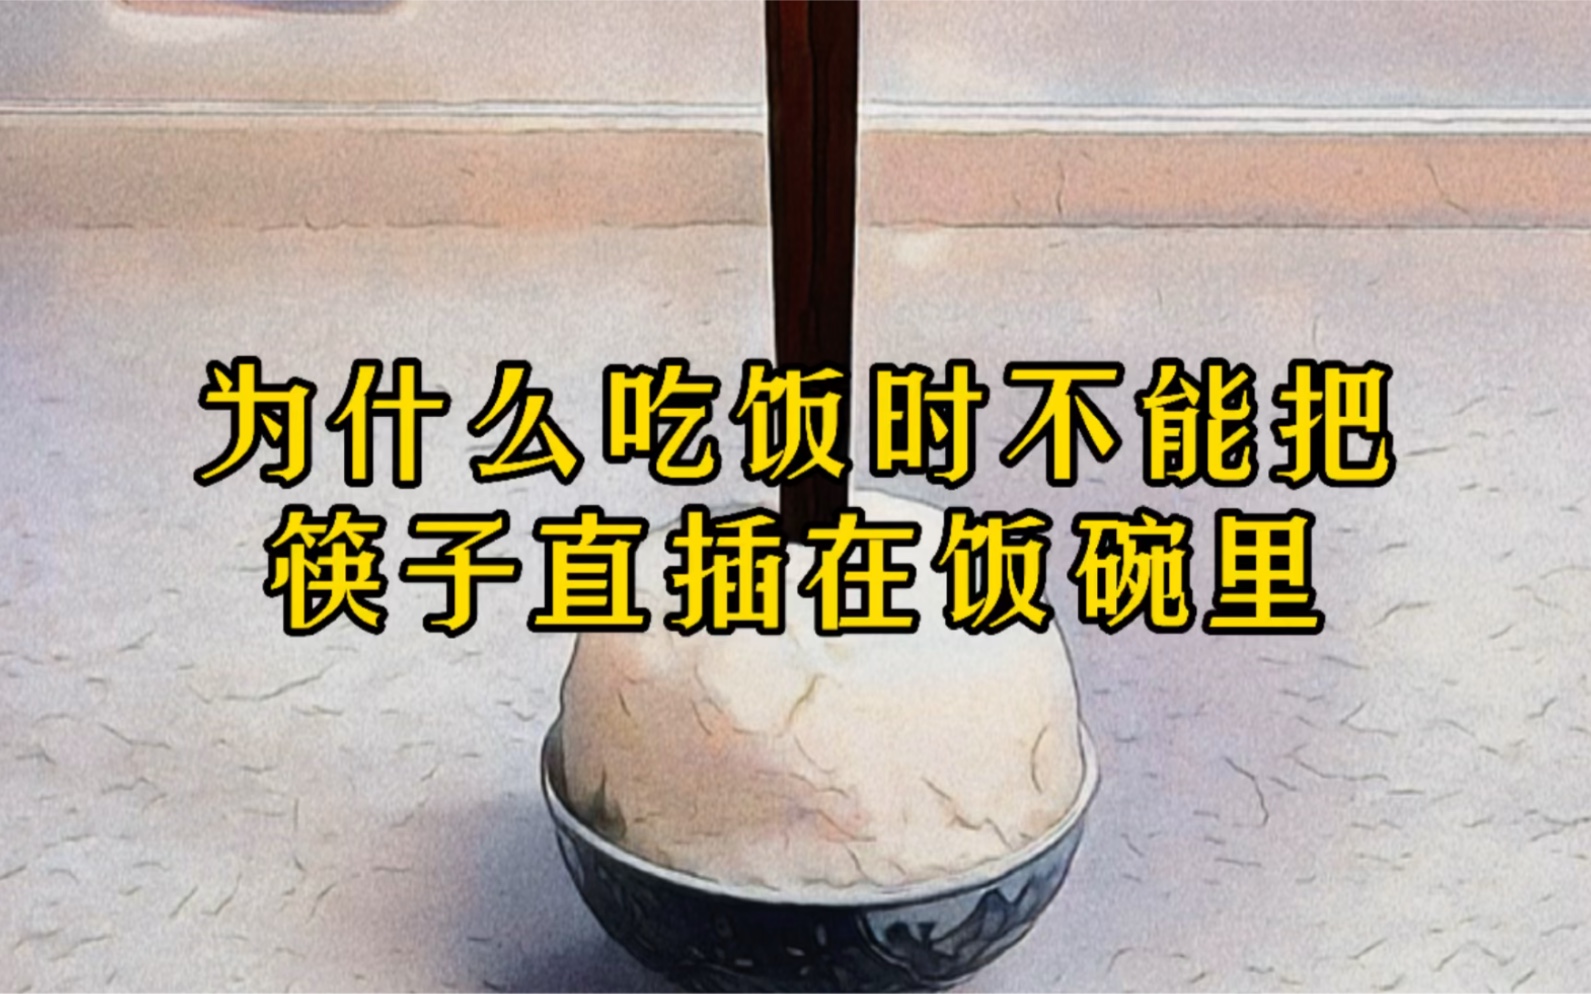 为什么吃饭时不能把筷子直接插在饭碗里